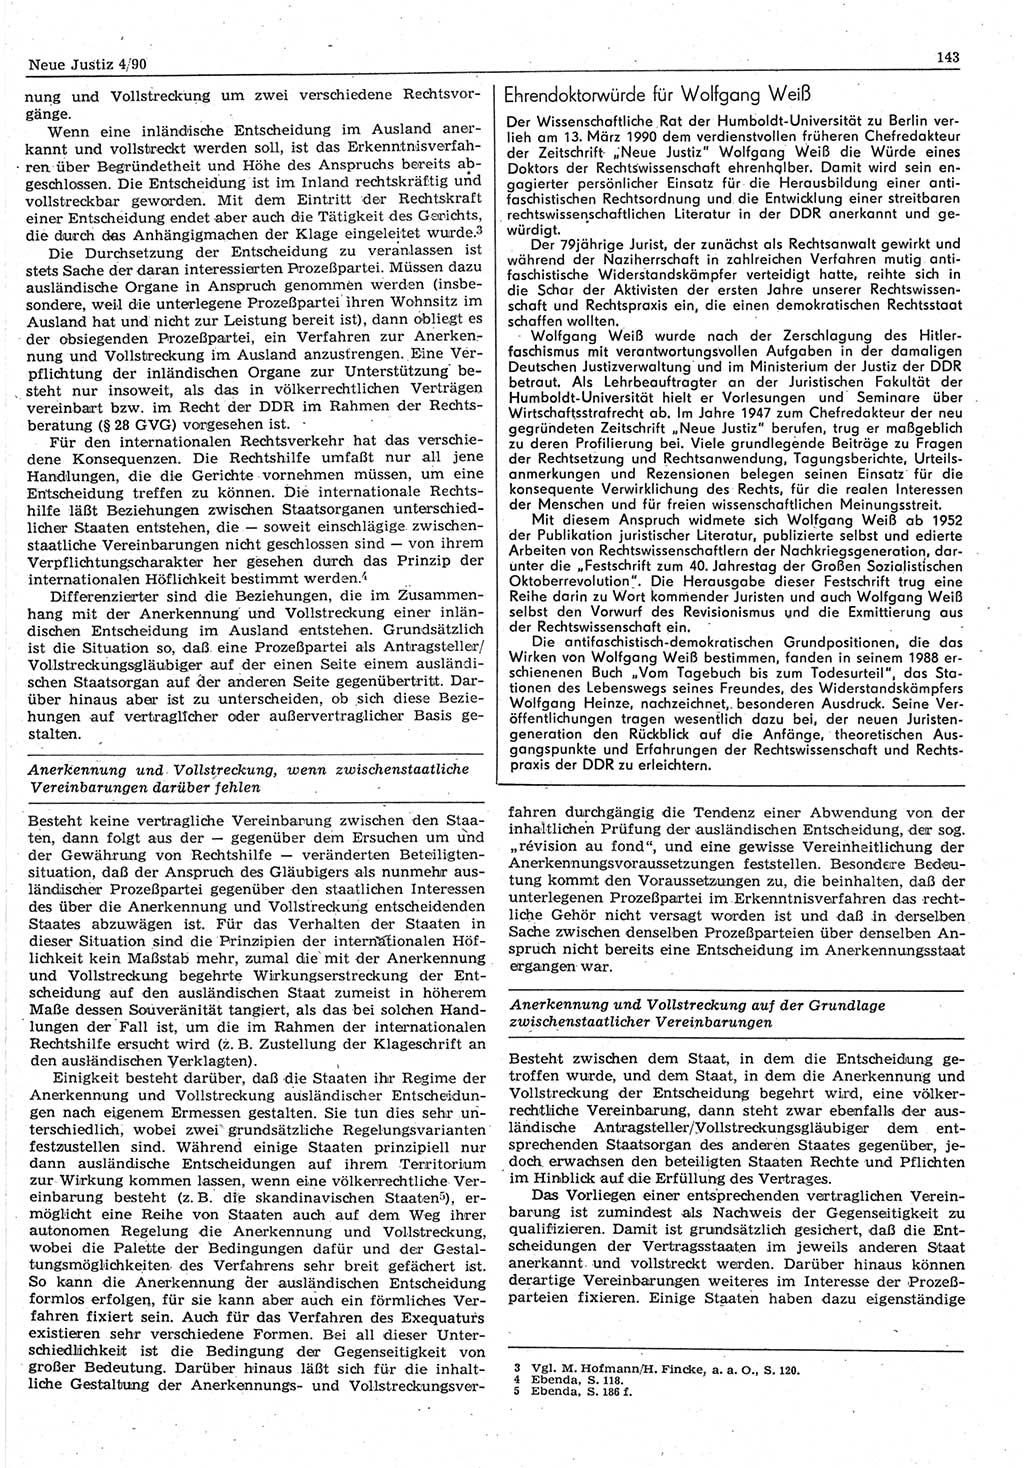 Neue Justiz (NJ), Zeitschrift für Rechtsetzung und Rechtsanwendung [Deutsche Demokratische Republik (DDR)], 44. Jahrgang 1990, Seite 143 (NJ DDR 1990, S. 143)